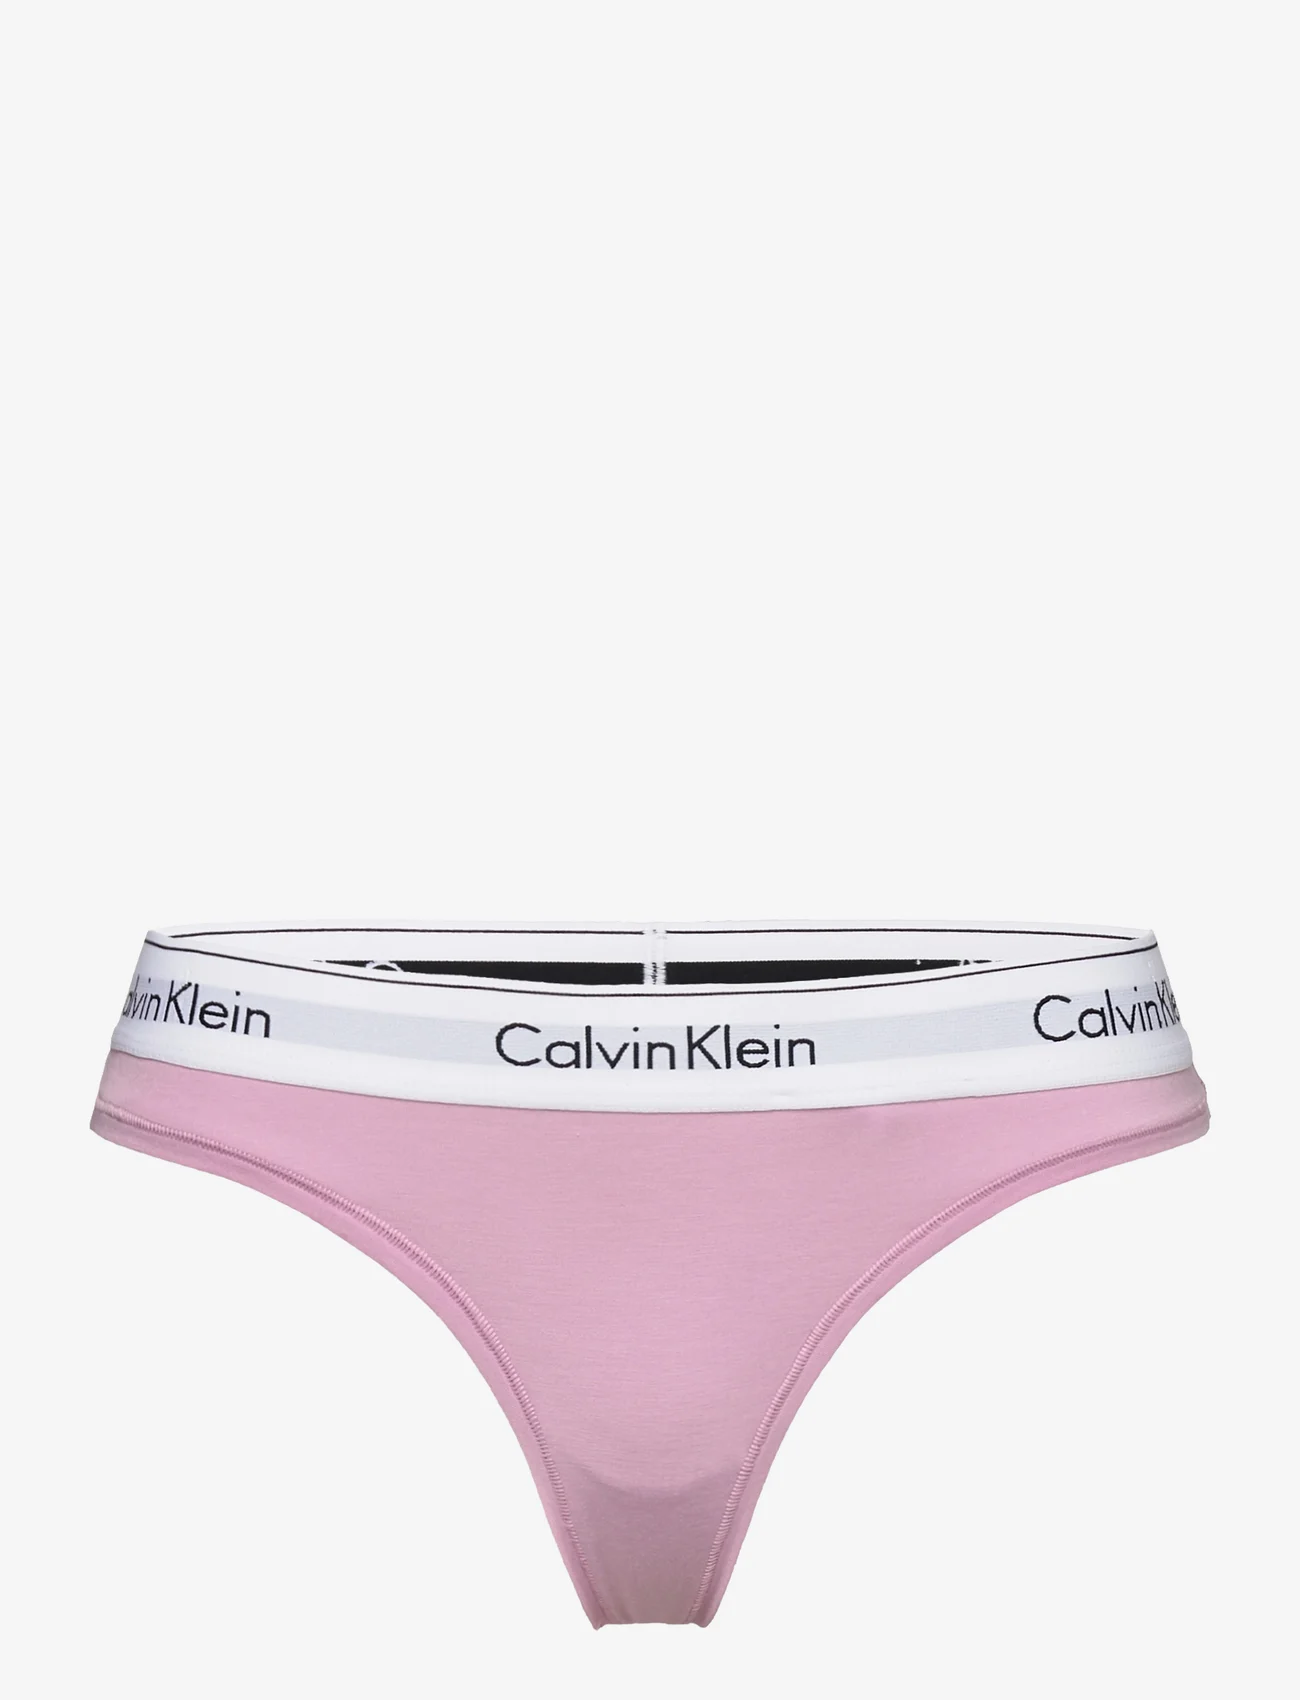 Calvin Klein - THONG - mažiausios kainos - mauve mist - 0